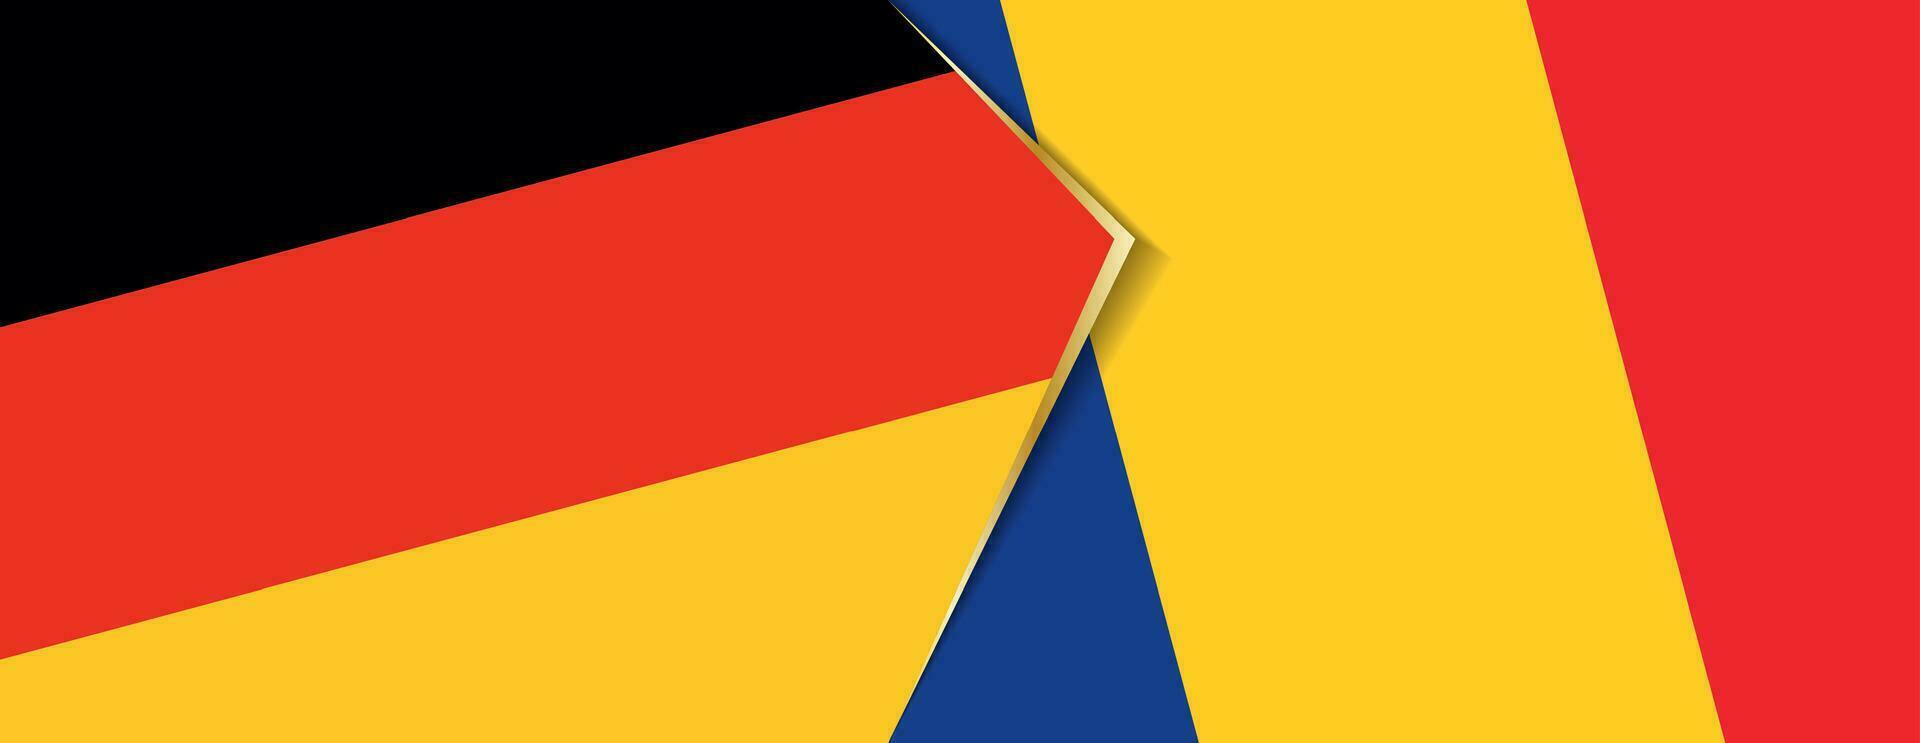 Alemania y Rumania banderas, dos vector banderas